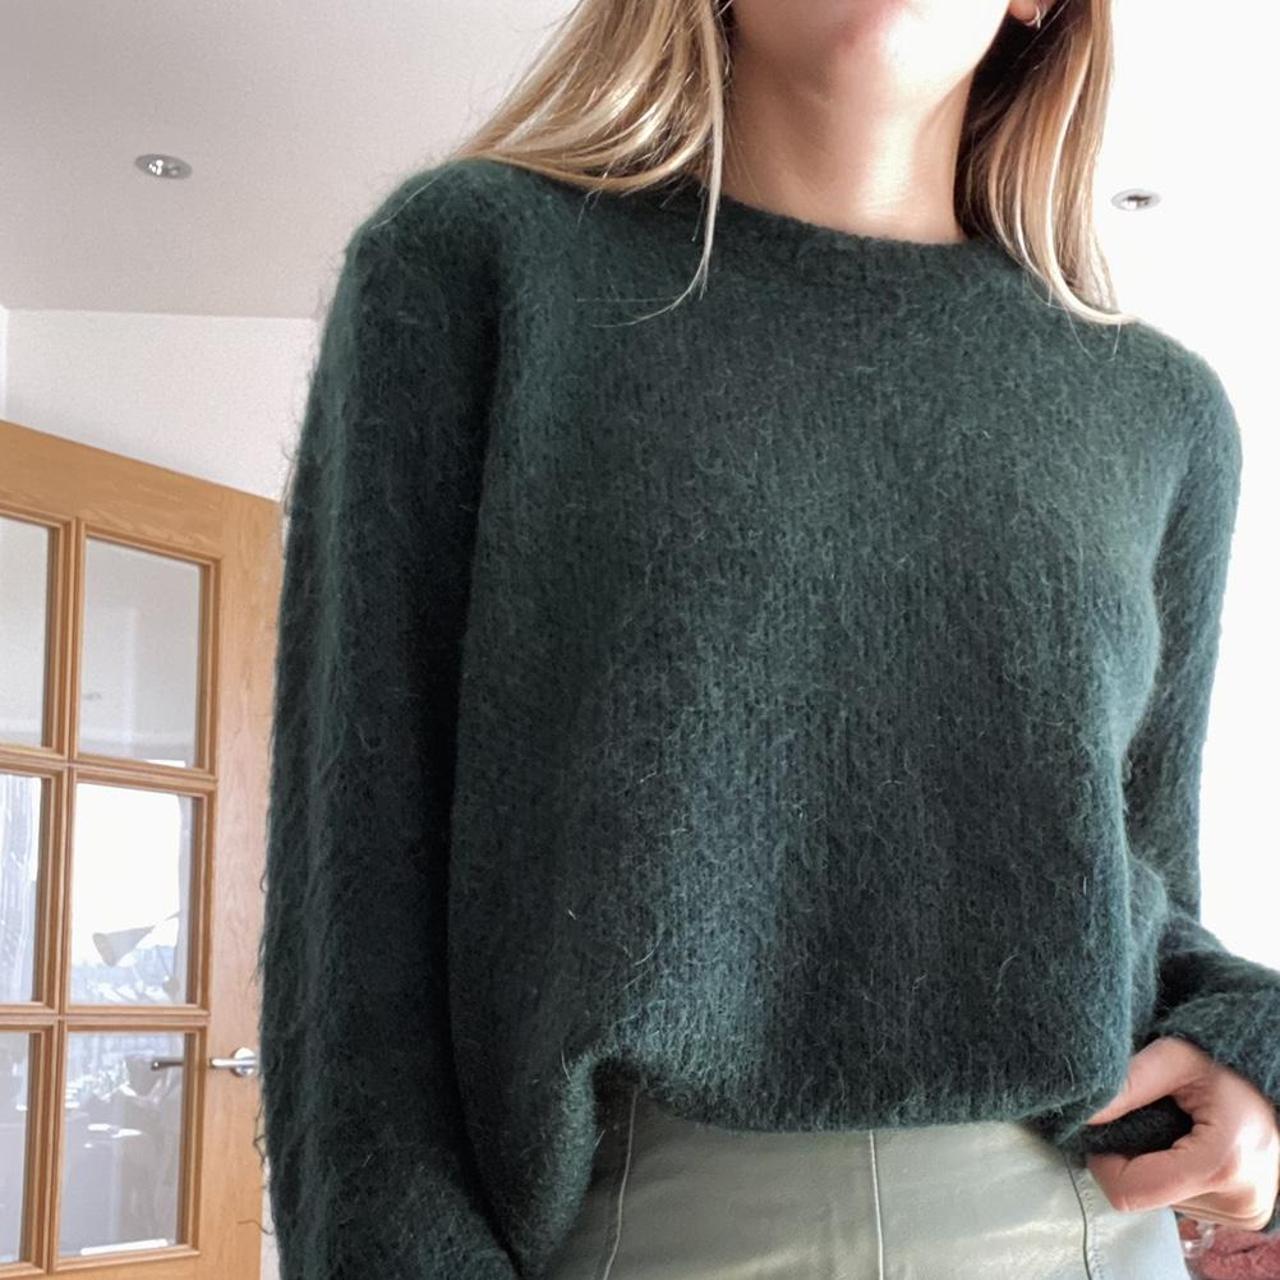 Vintage wool jumper. Dark green 💚 Can be worn two... - Depop